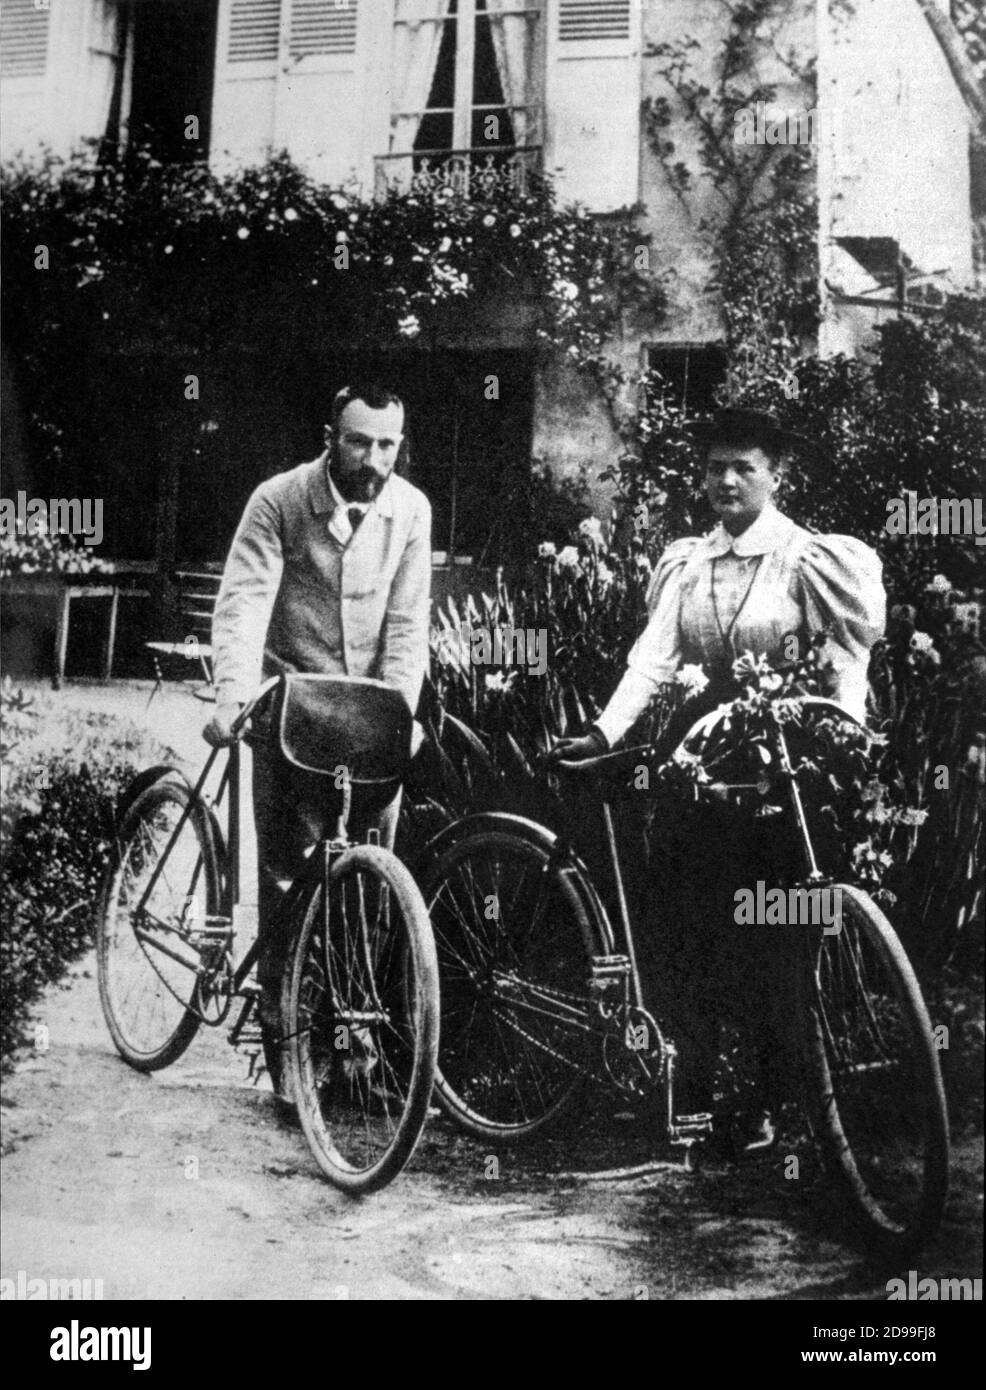 1895 , Sceaux , Frankreich : Pierre CURIE ( Paris , 1859 - 1906 ) und seine Frau Marie CURIE Sklodowska ( Varsavia , Polen 1867 - Sancancemoz , Sallanches , Savoie 1934 ) , gefeierte physiciens , Start der Hochzeitsreise mit dem Fahrrad - FISICA - FISICI - SCIENZIATO - SCIENZIATI - PHYSIK - BICICLETTA - Radioattività - RADIOAKTIVITÄT ----- Archivio GBB Stockfoto